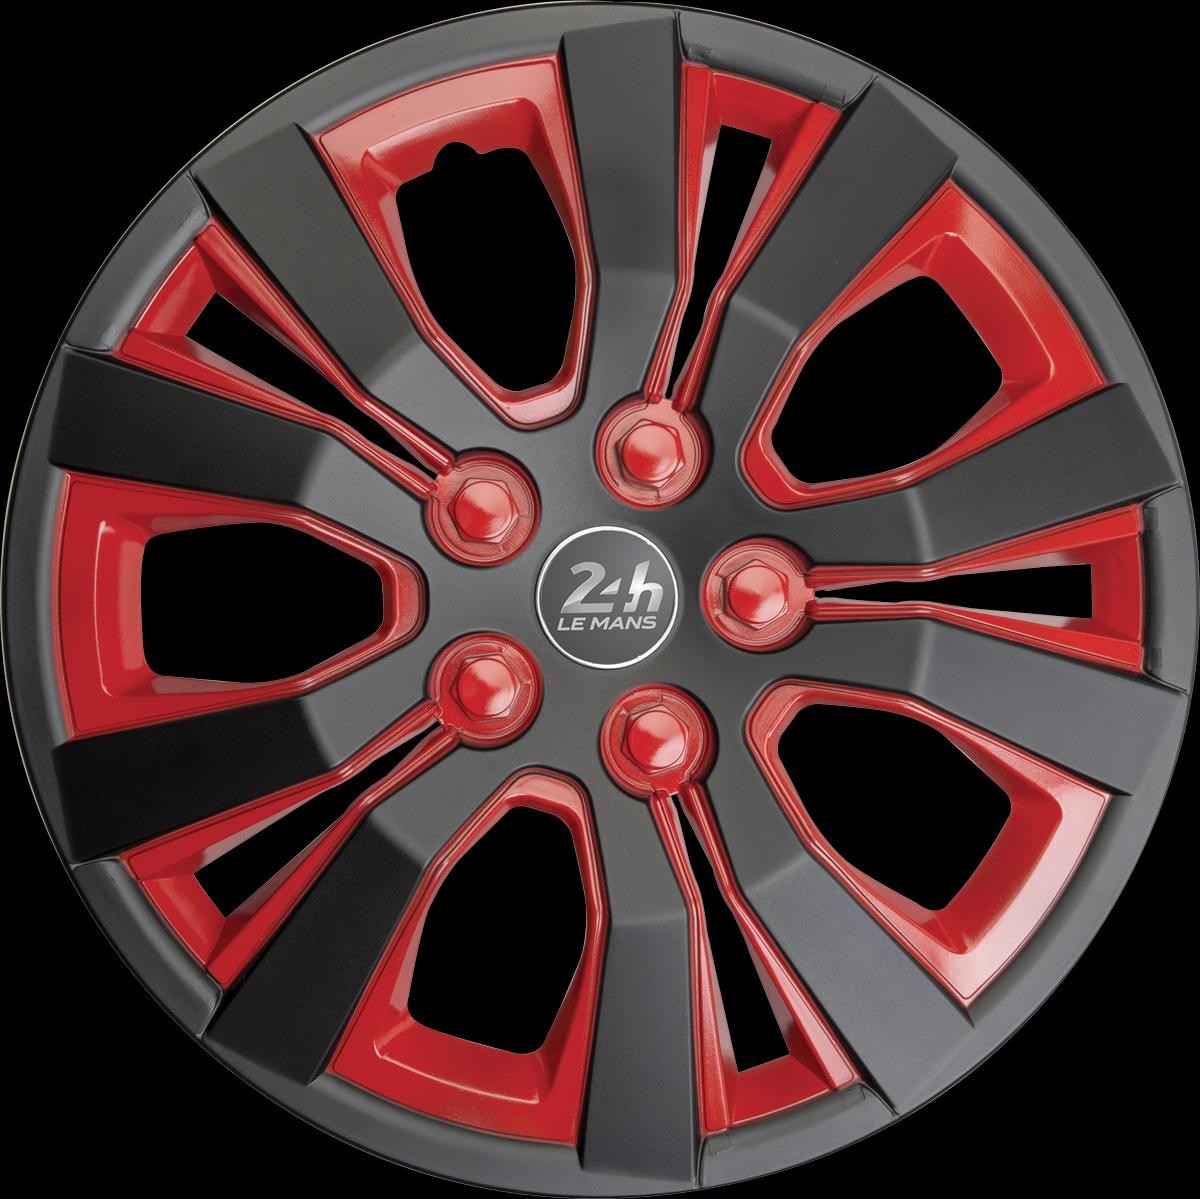 Car wheel trims Red 24H LE MANS Mulsanne E14MULBR